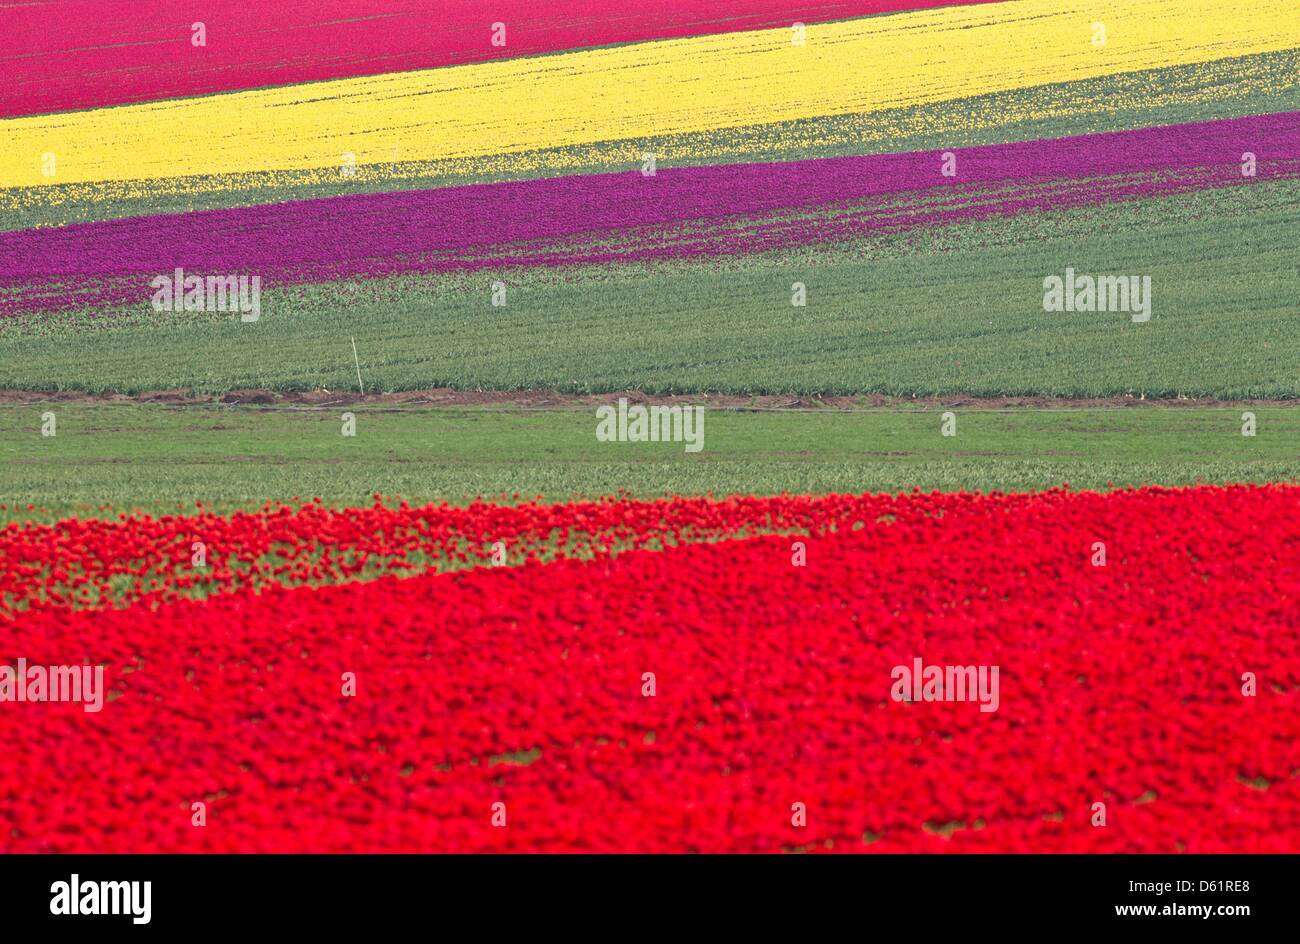 Los tulipanes florecen en un campo de cultivo especial en compañía Degenhardt Schwaneberg, Alemania, el 30 de abril de 2012. Los tulipanes son plantados por sus lámparas. Foto: JENS WOLF Foto de stock